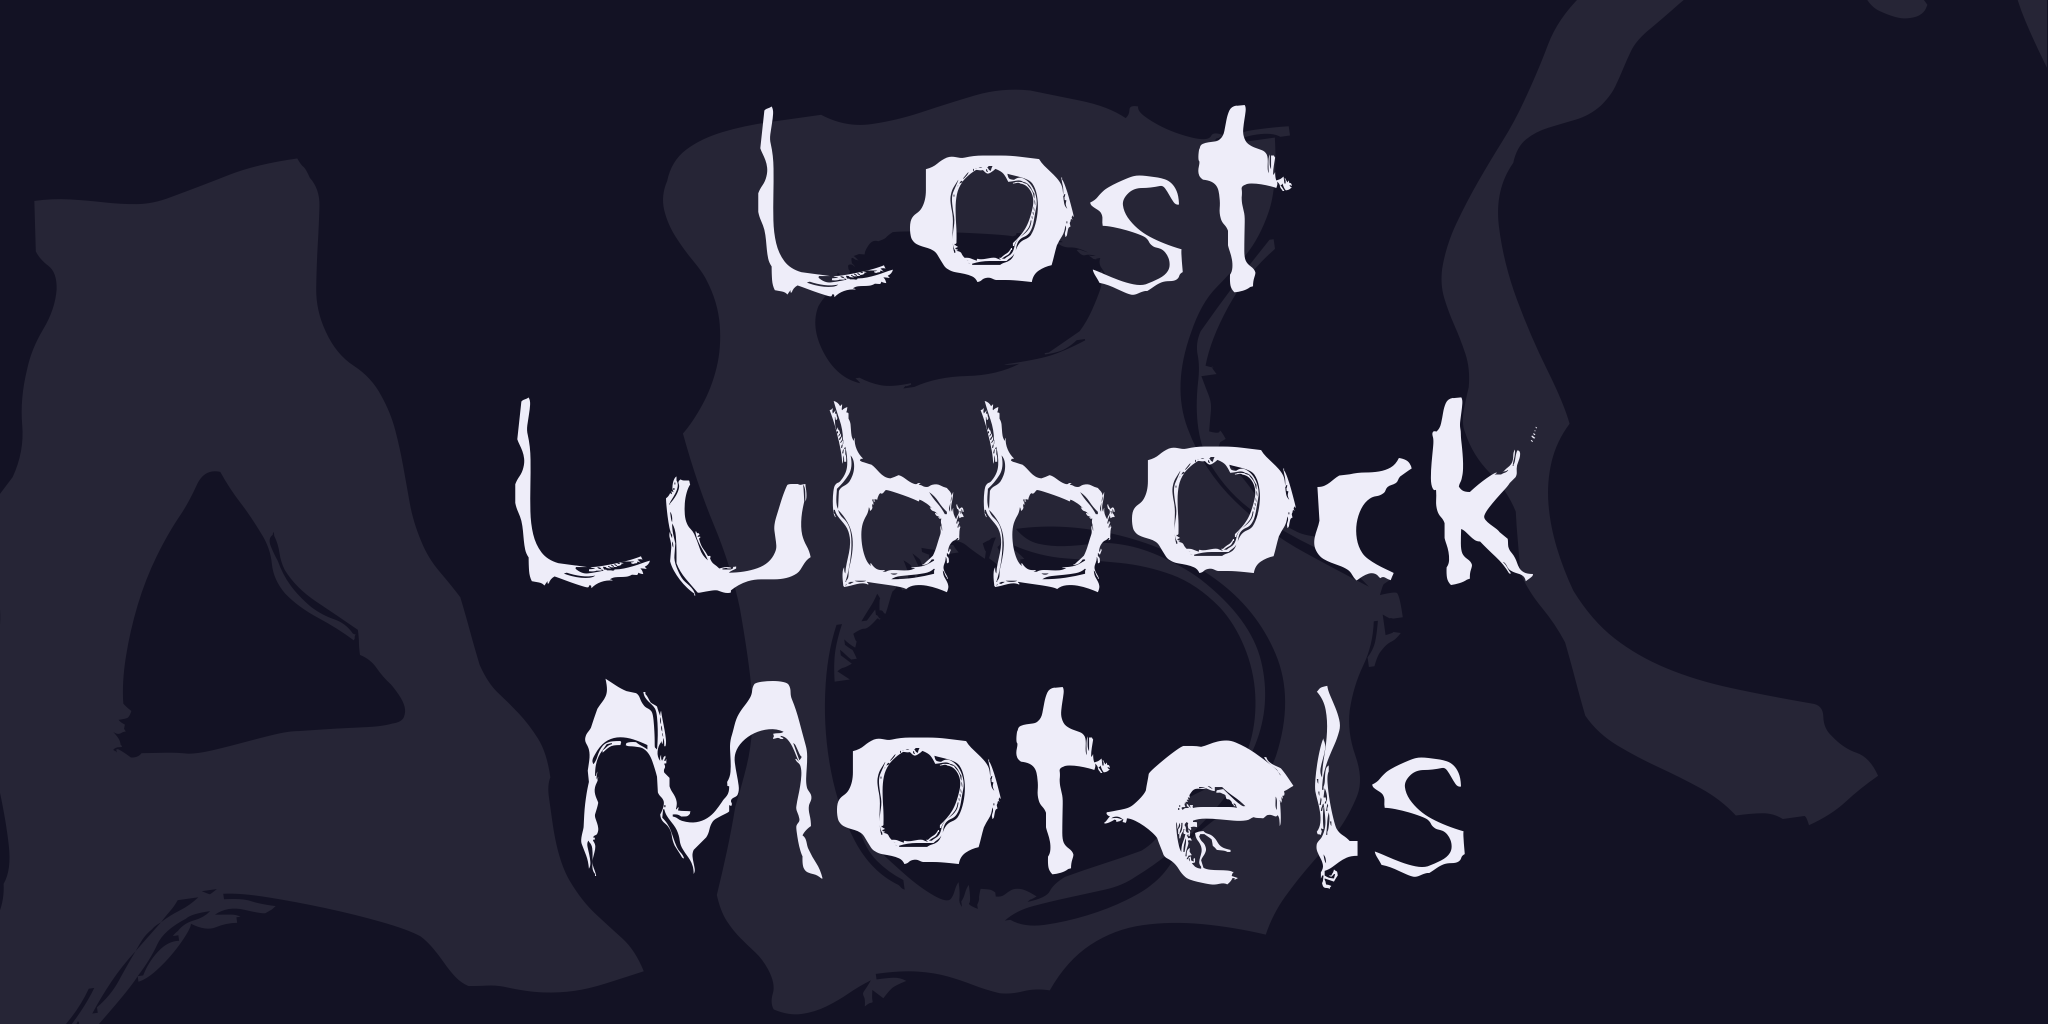 Lost Lubbock Motels